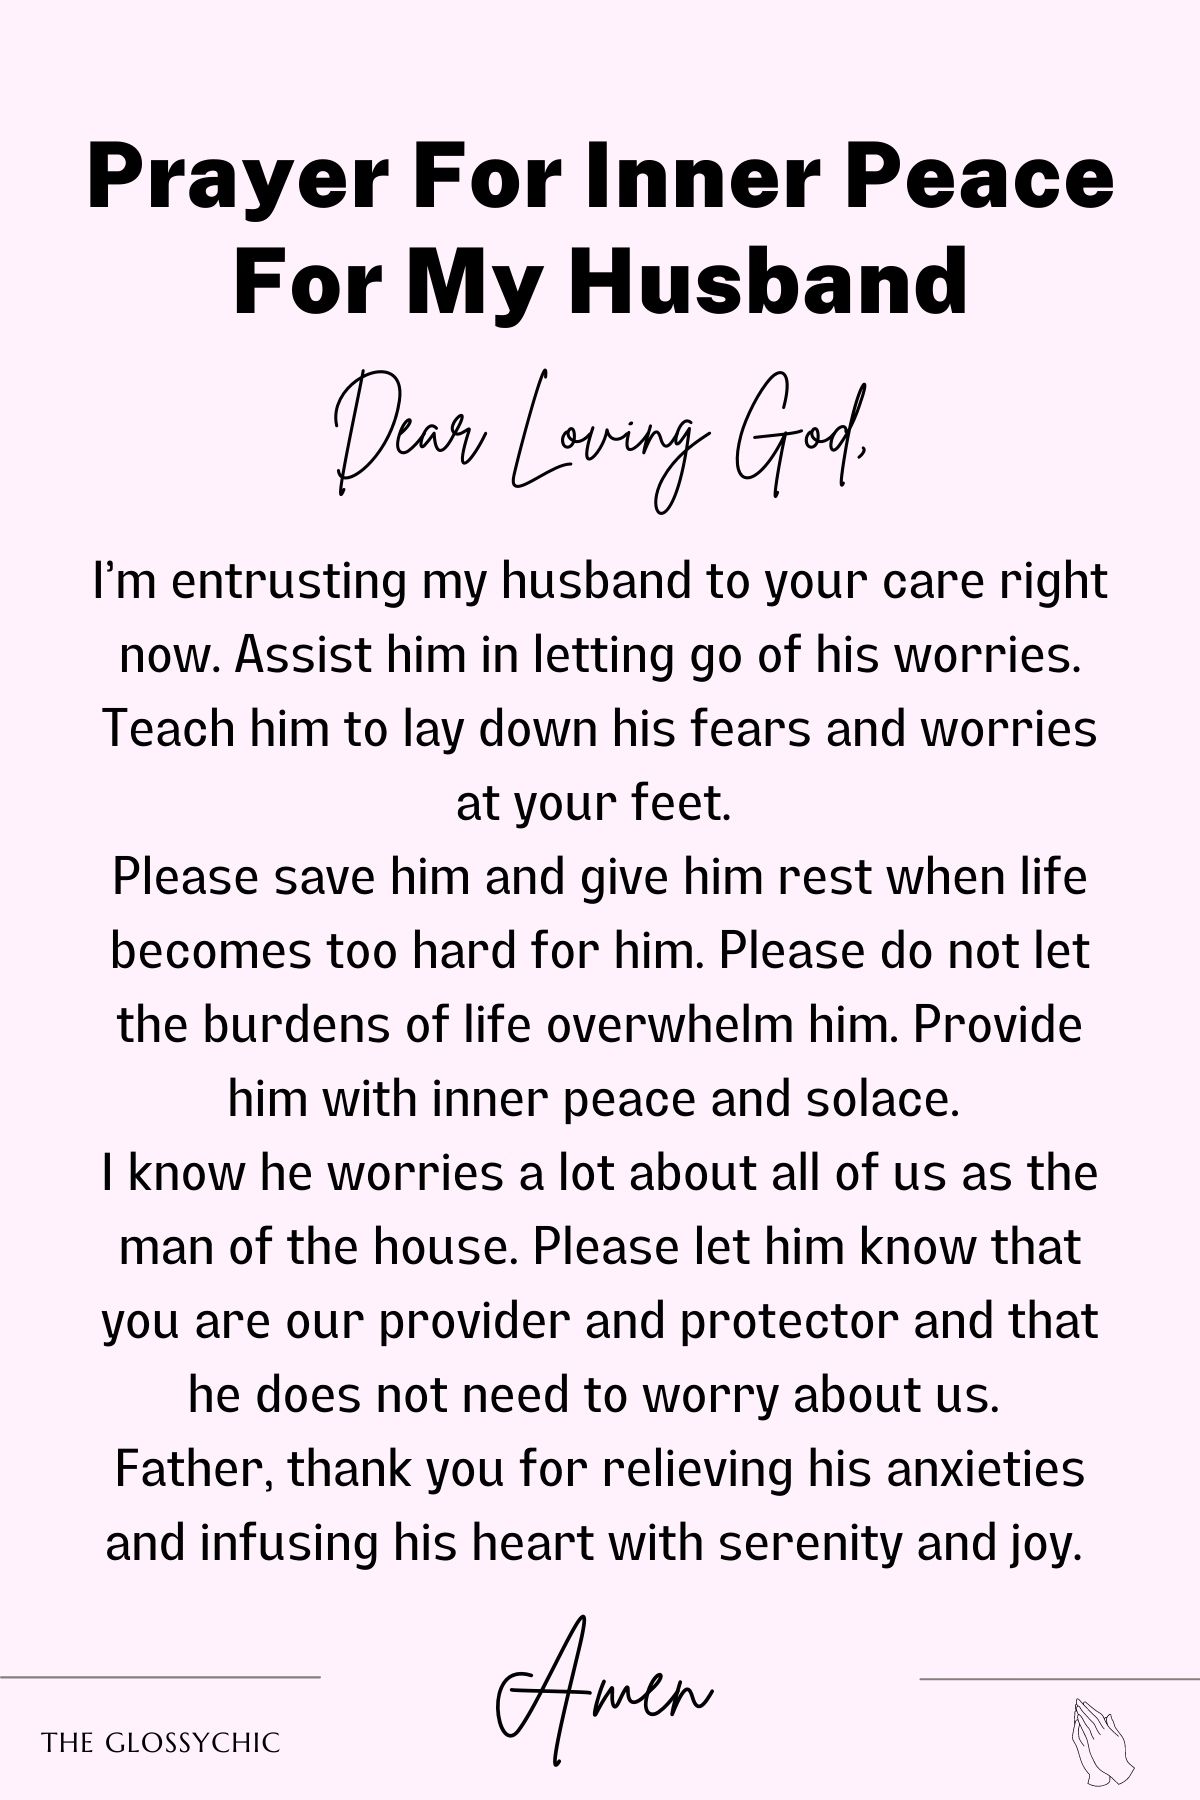 Prayer for inner peace for my husband